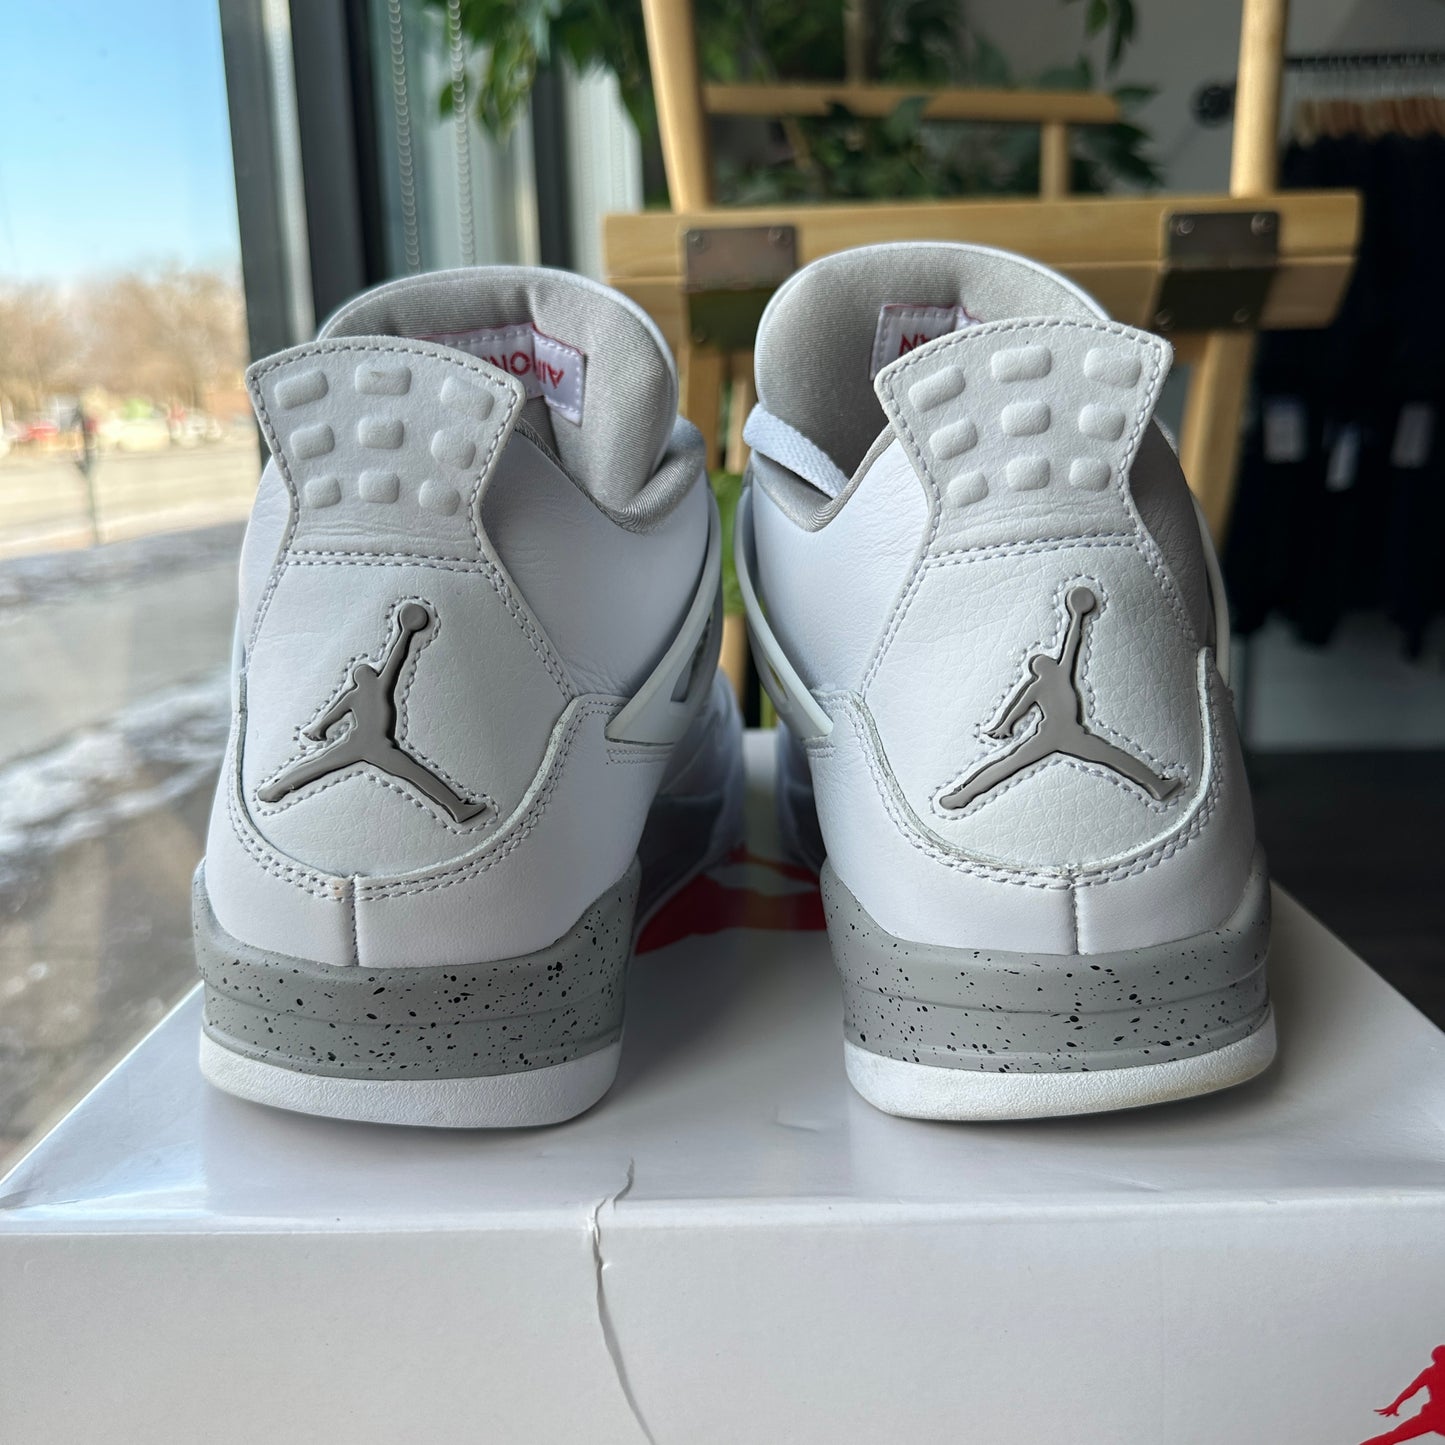 Air Jordan 4 "White Oreo" Size 10